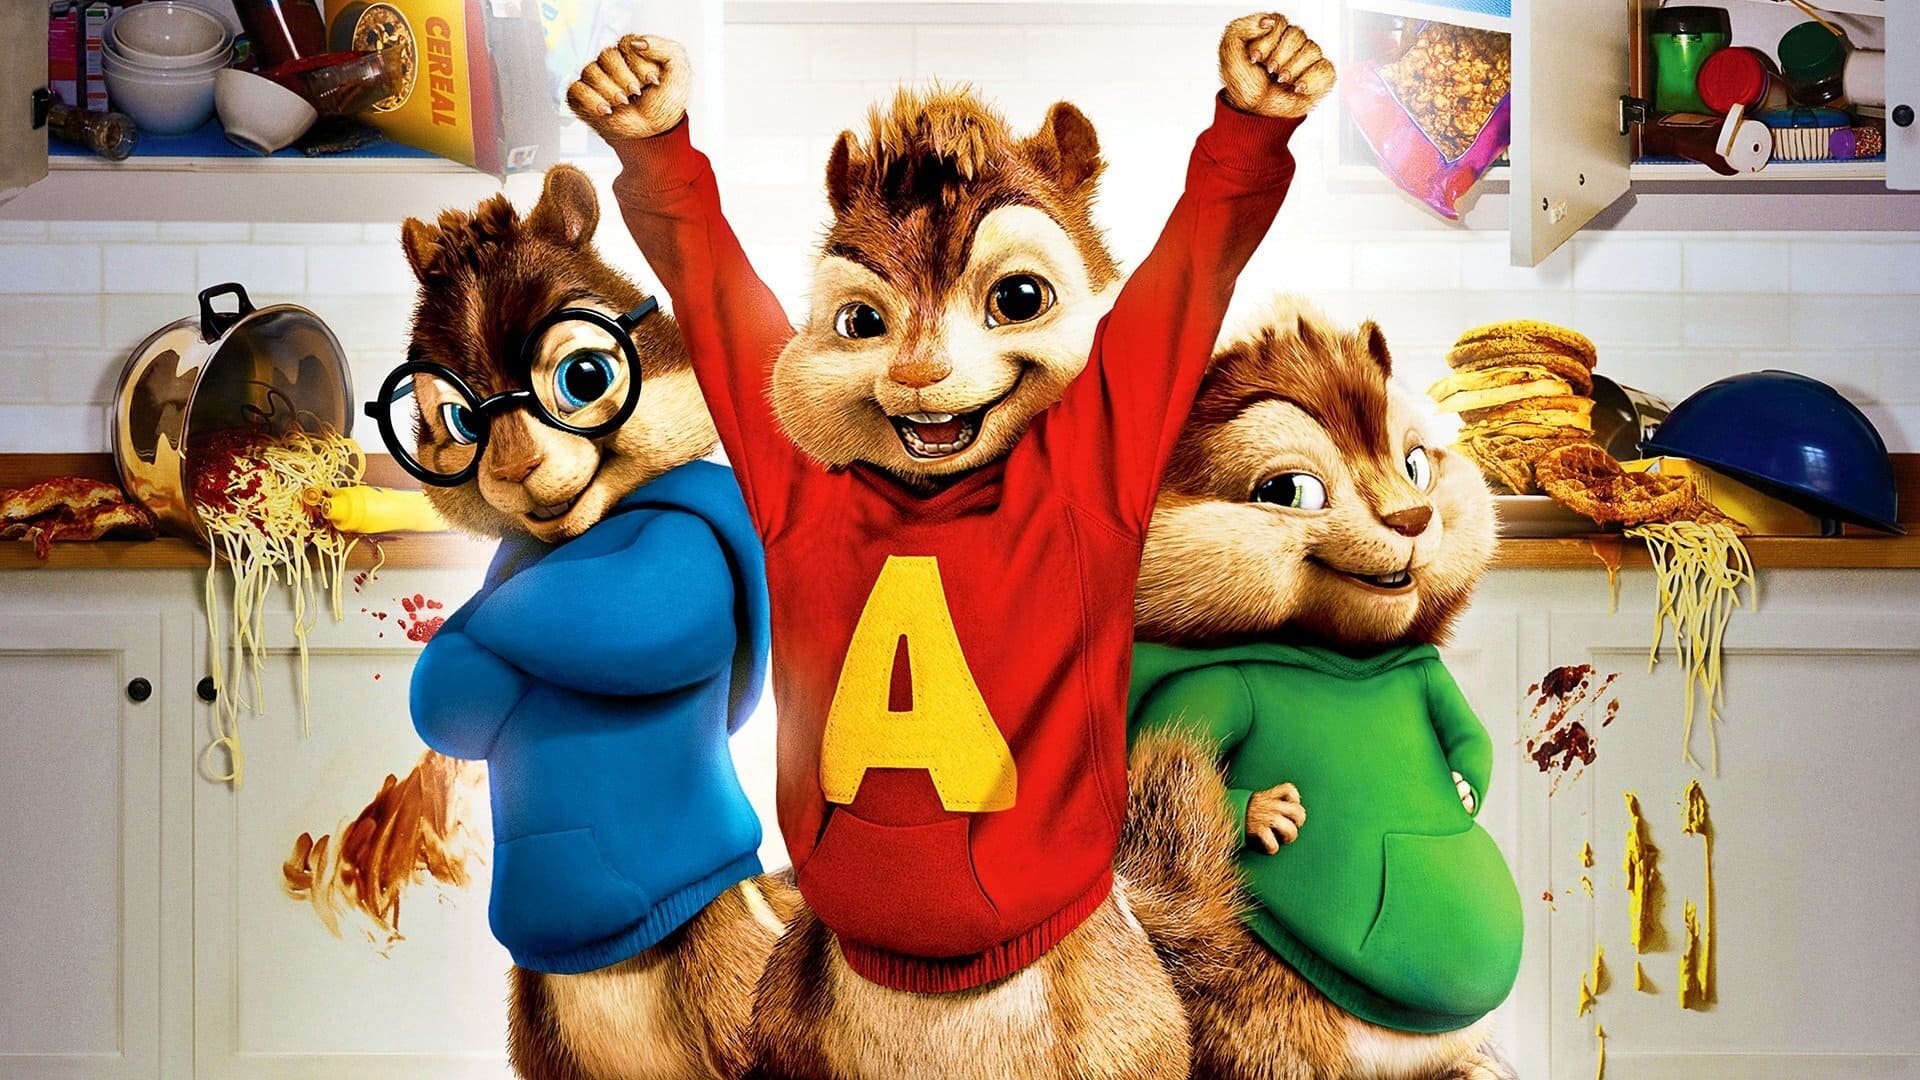 อัลวินกับสหายชิพมังค์  Alvin and the Chipmunks ออนไลน์โดยสมบูรณ์ในปี 2007